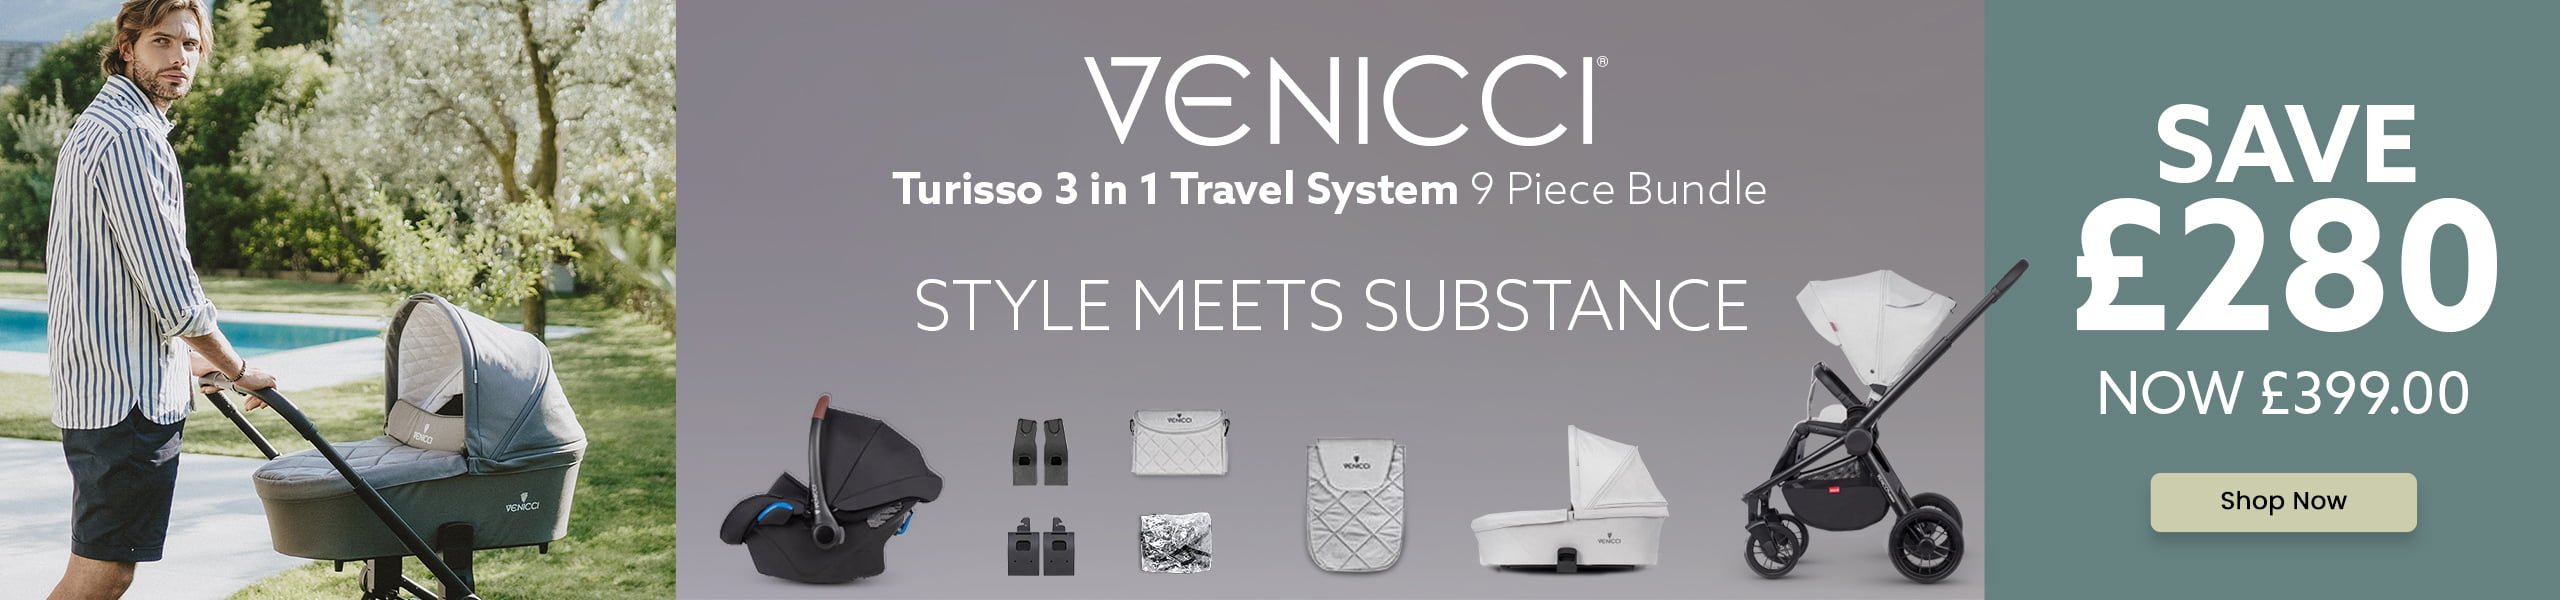 Venicci Turisso 3 in 1 Travel System 9pc bundle